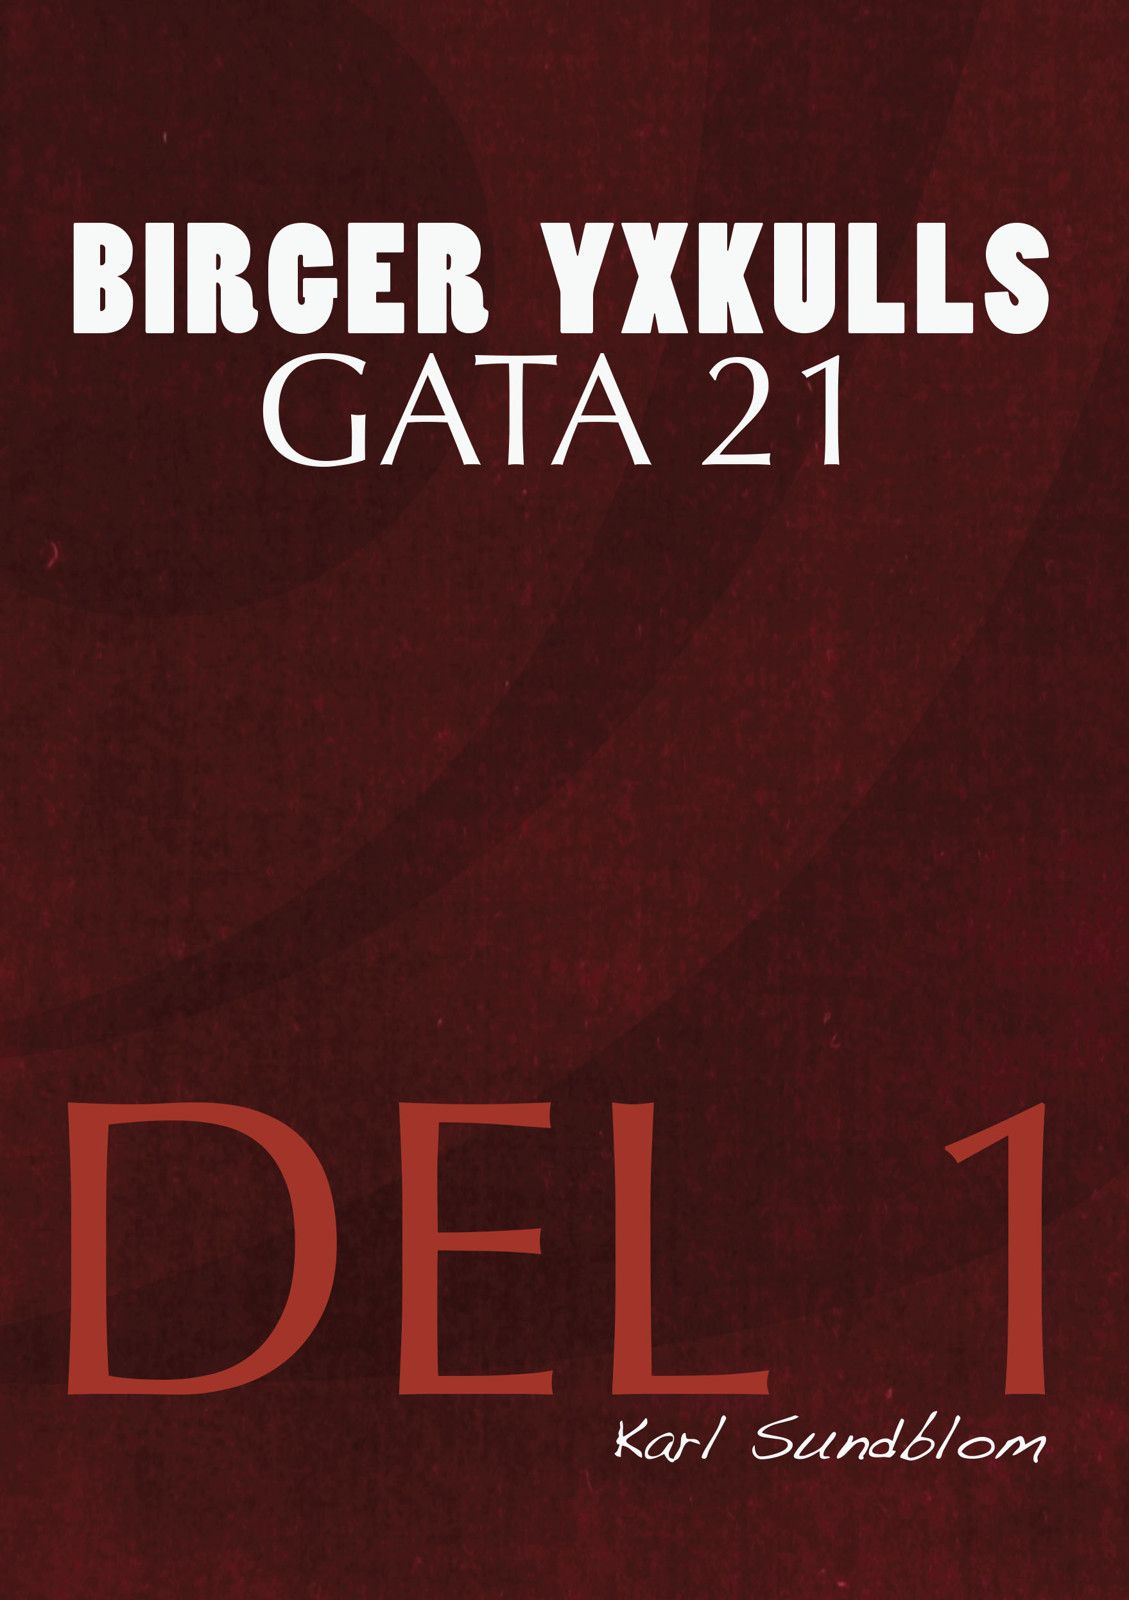 BIRGER YXKULLS GATA 21, DEL 1, e-bok av Karl Sundblom